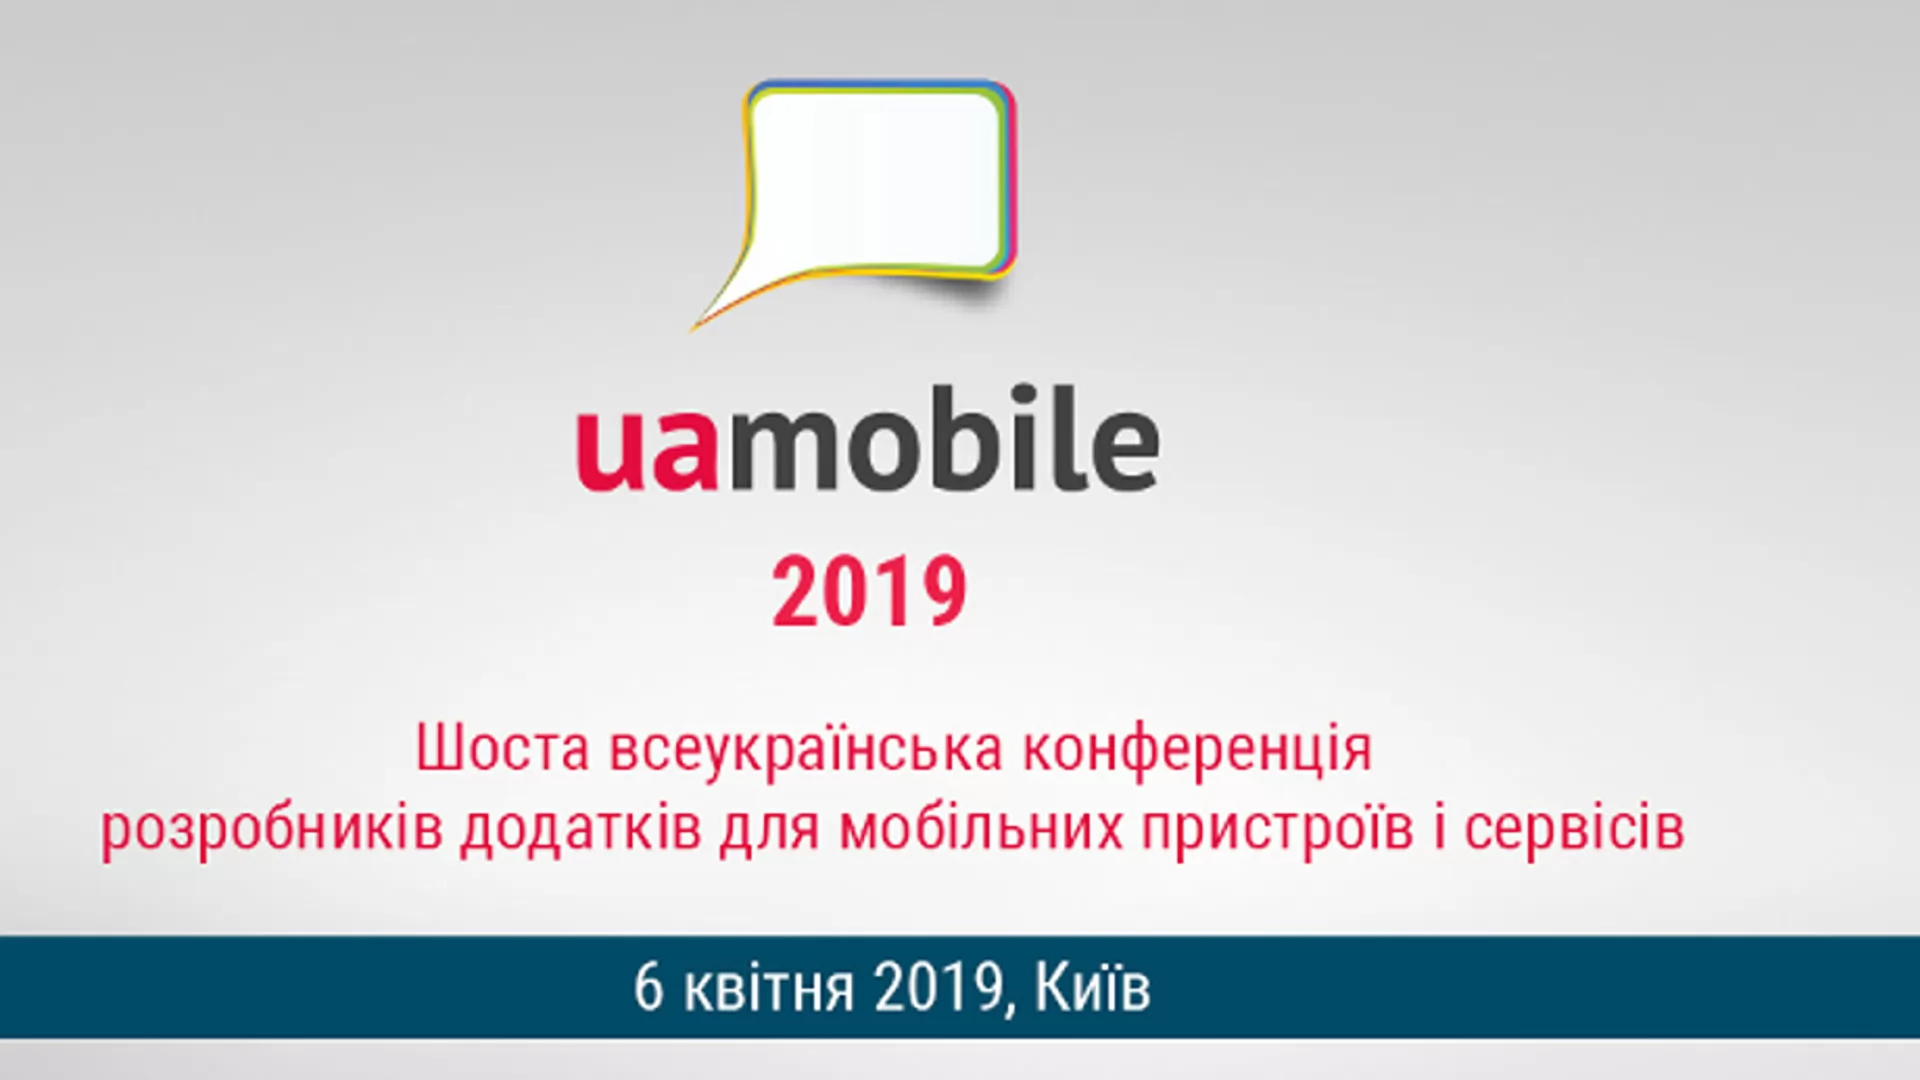 UA Mobile